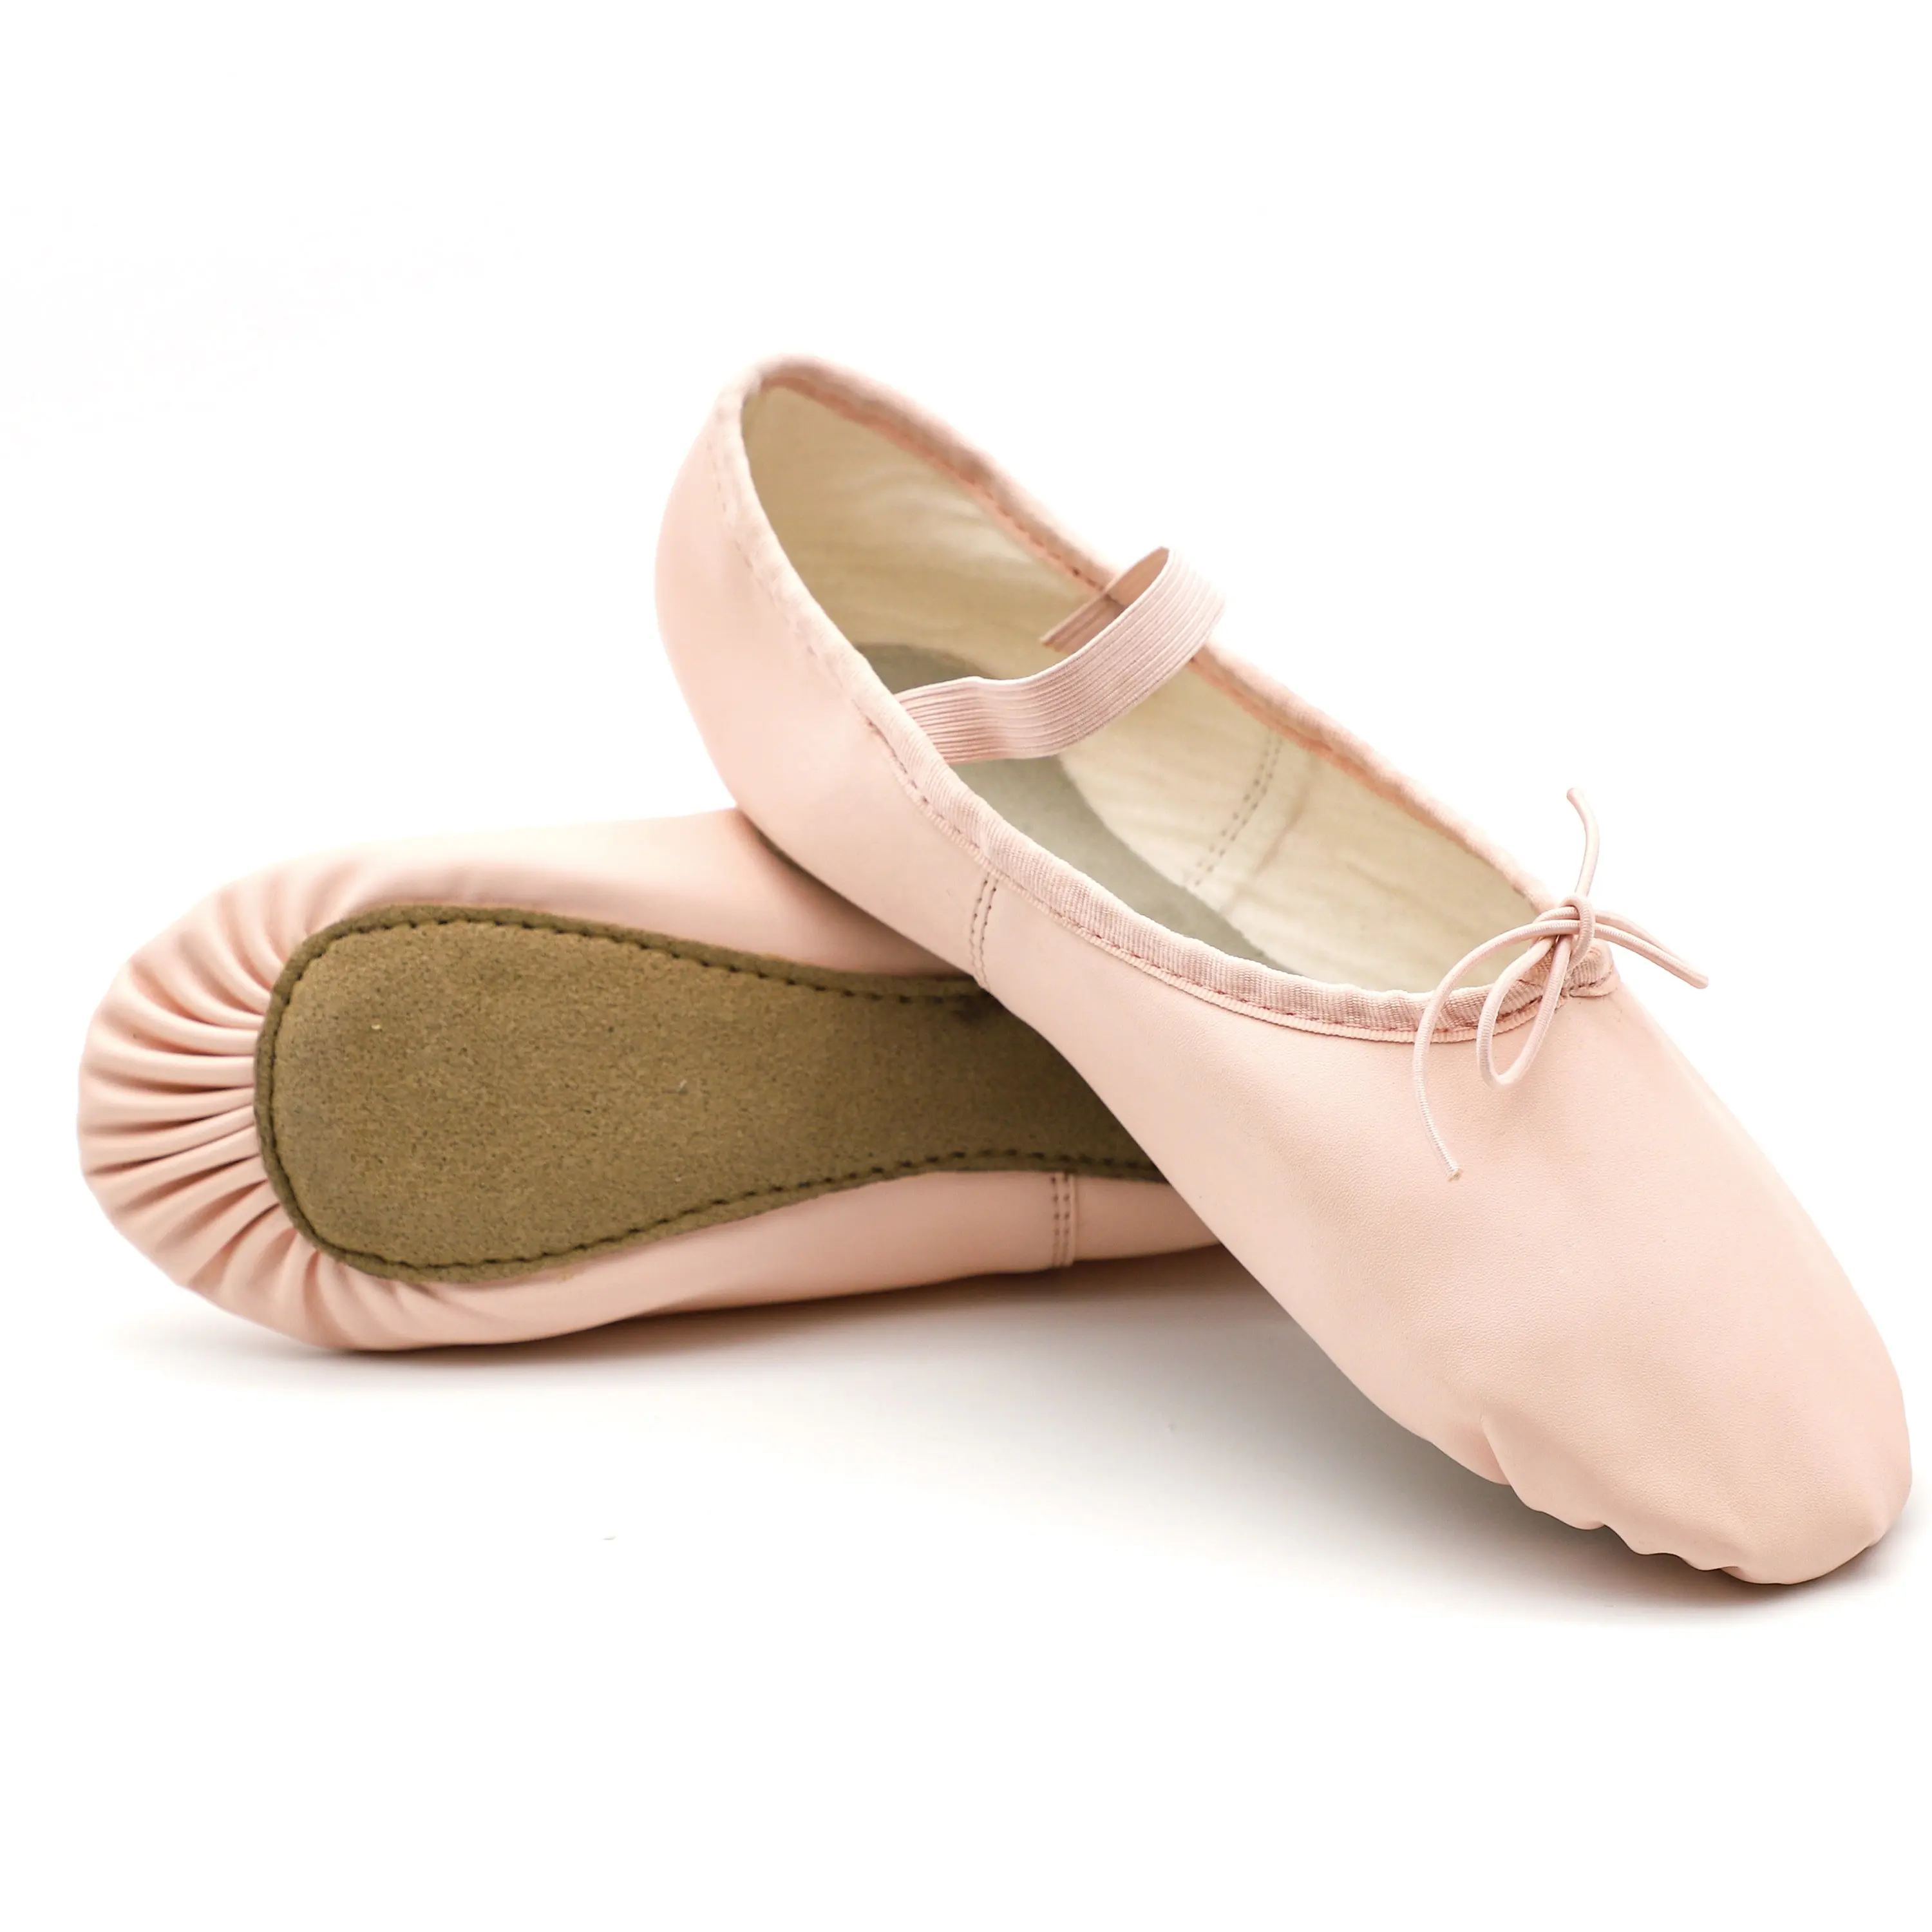 EU und USA auf Lager Geschmeidige Balletts chuhe aus echtem Leder/Balletts chuhe/Ballerina-Schuhe für Frauen und Mädchen mit elastischem Topline und elastischem Streifen